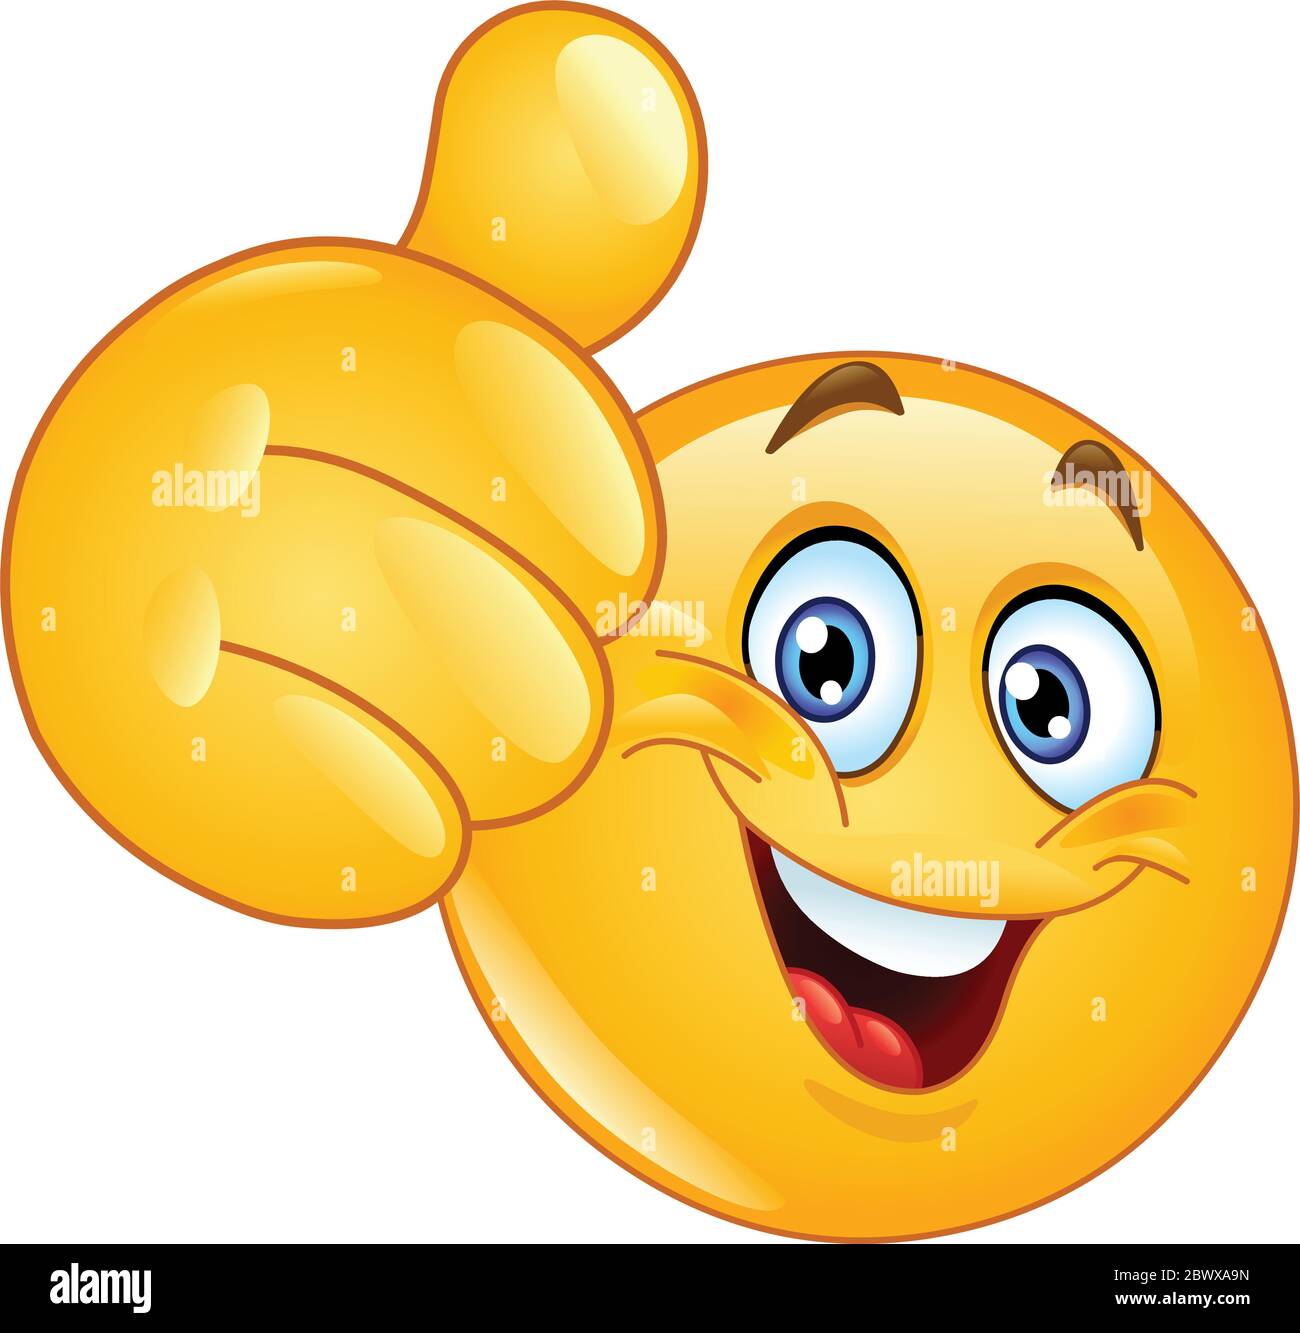 thumbs up meme emoji pissed